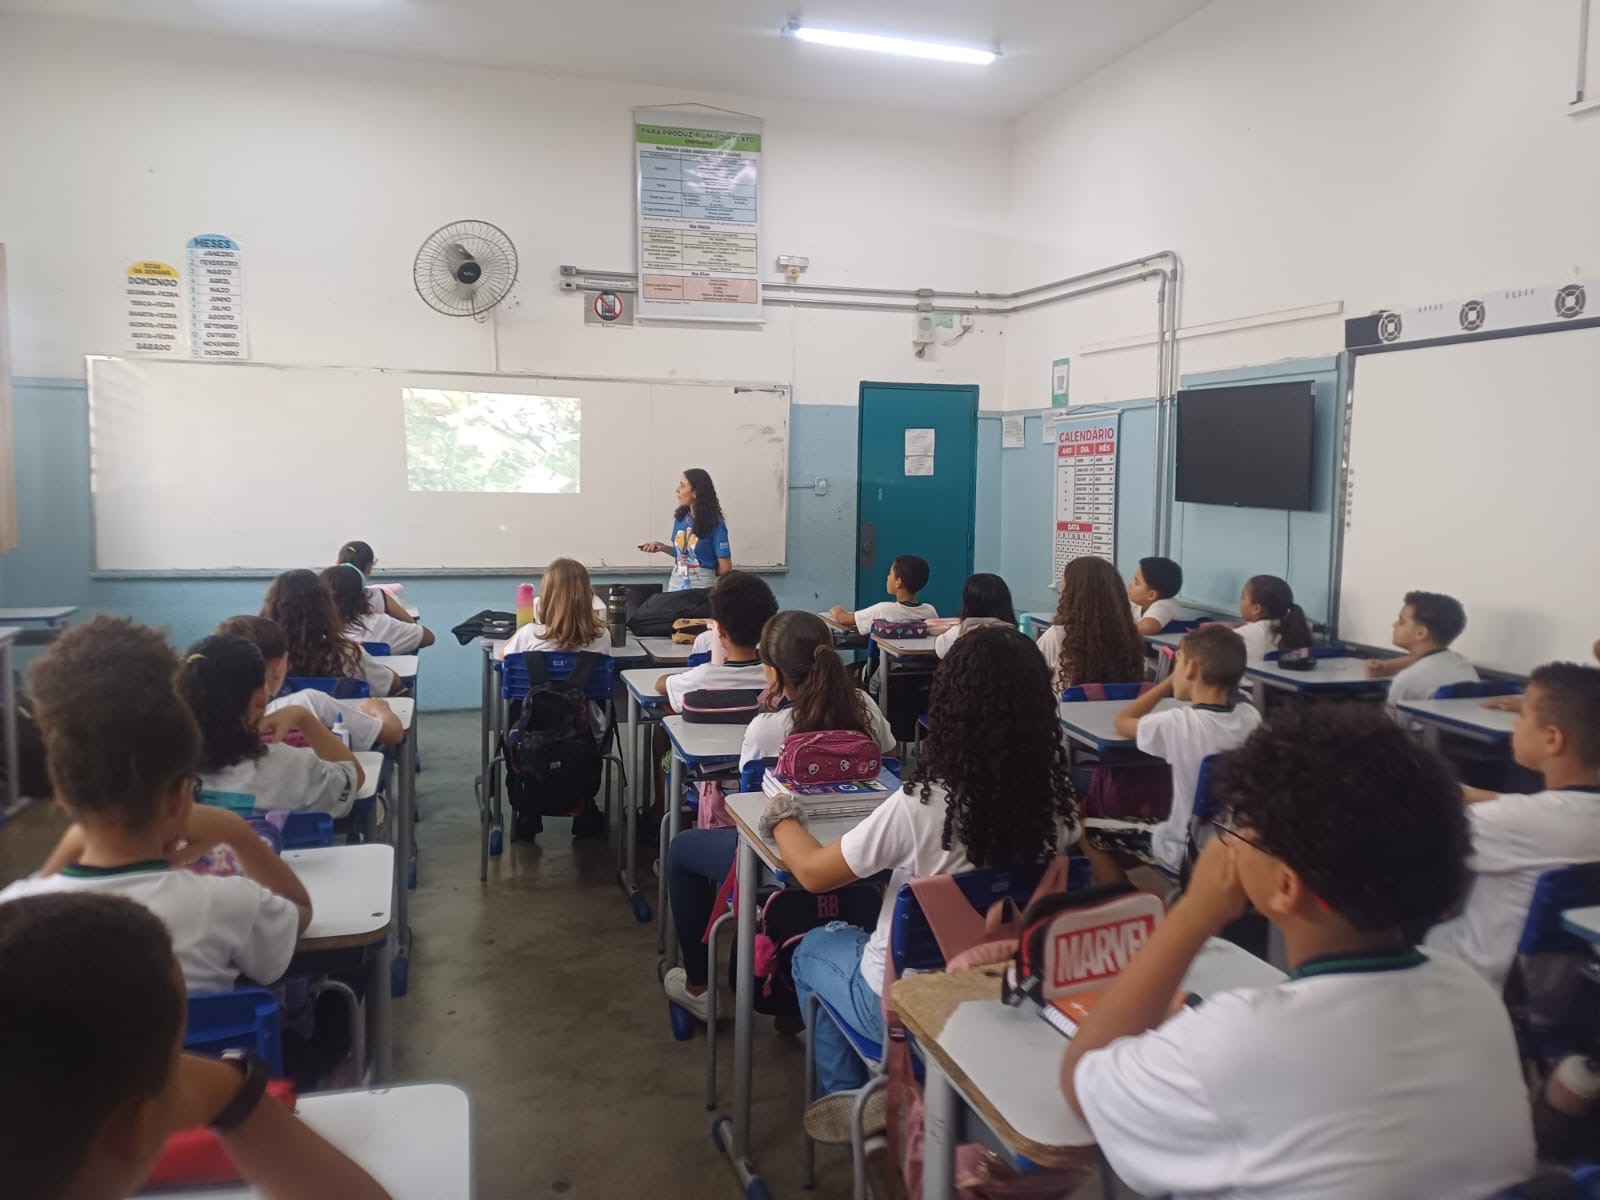 Projeto Guardiões de VCP" - Viracopos Promoove Conscientização em Escolas"